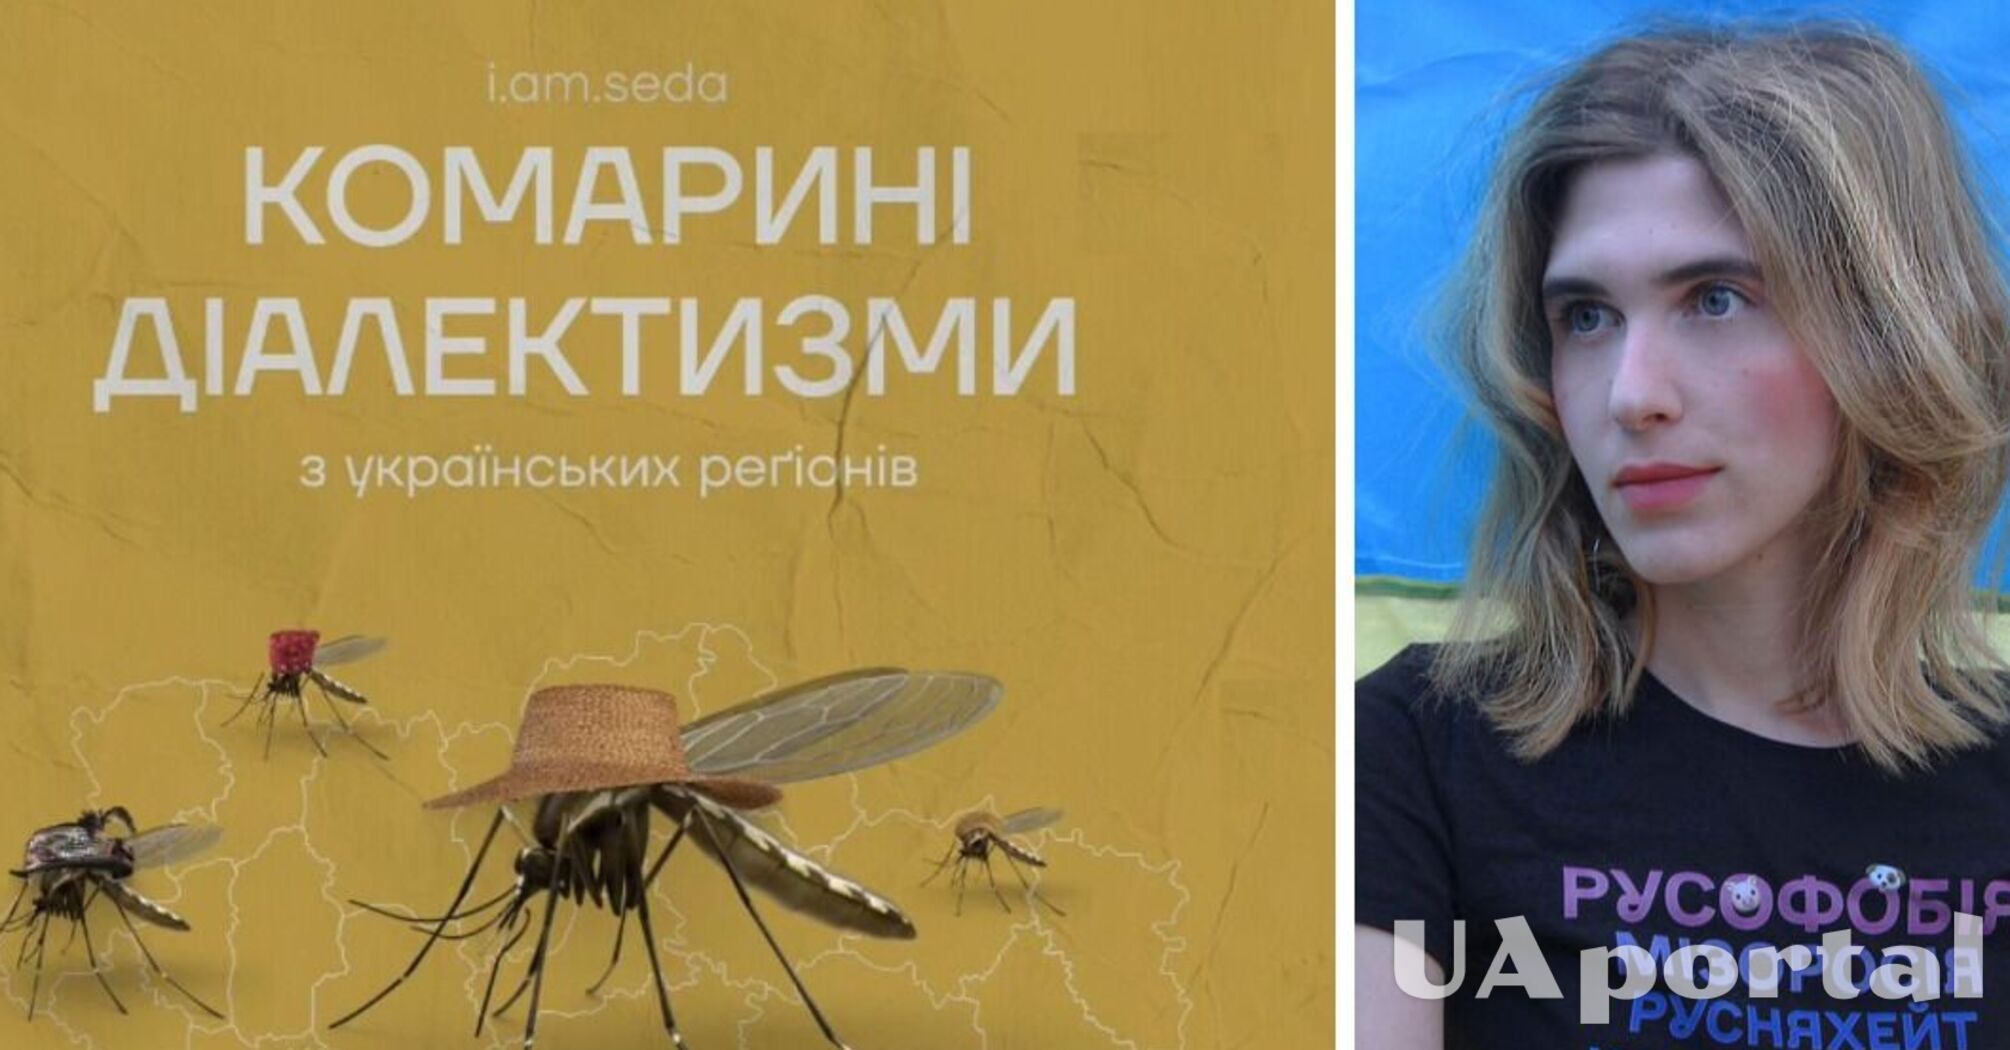 Цинцар, овадня и лярва: что общего в украинских 'комариных диалектизмах'